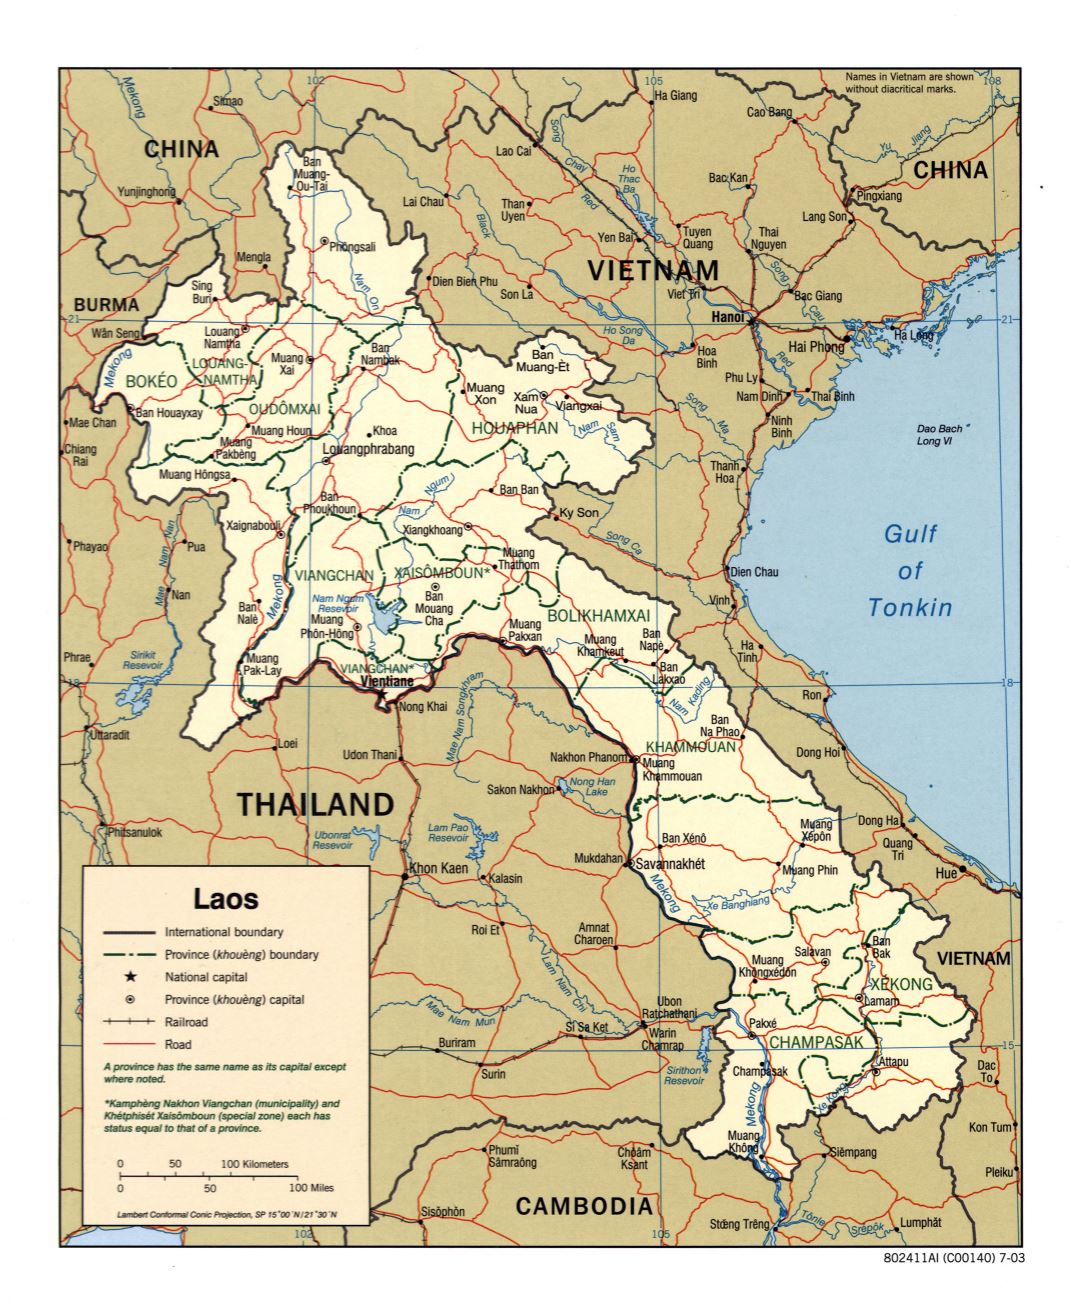 A gran escala mapa político y administrativo de Laos con carreteras, ferrocarriles y principales ciudades - 2003